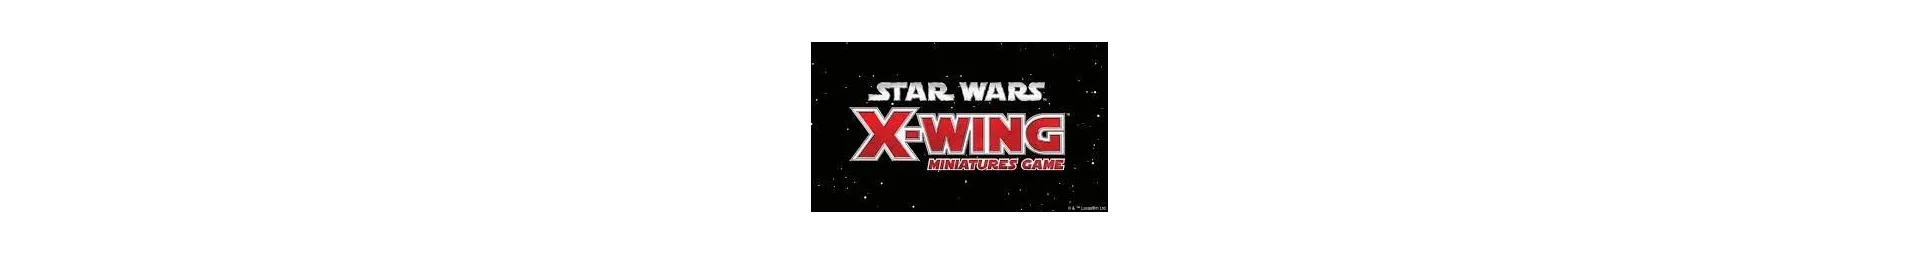 X-wing